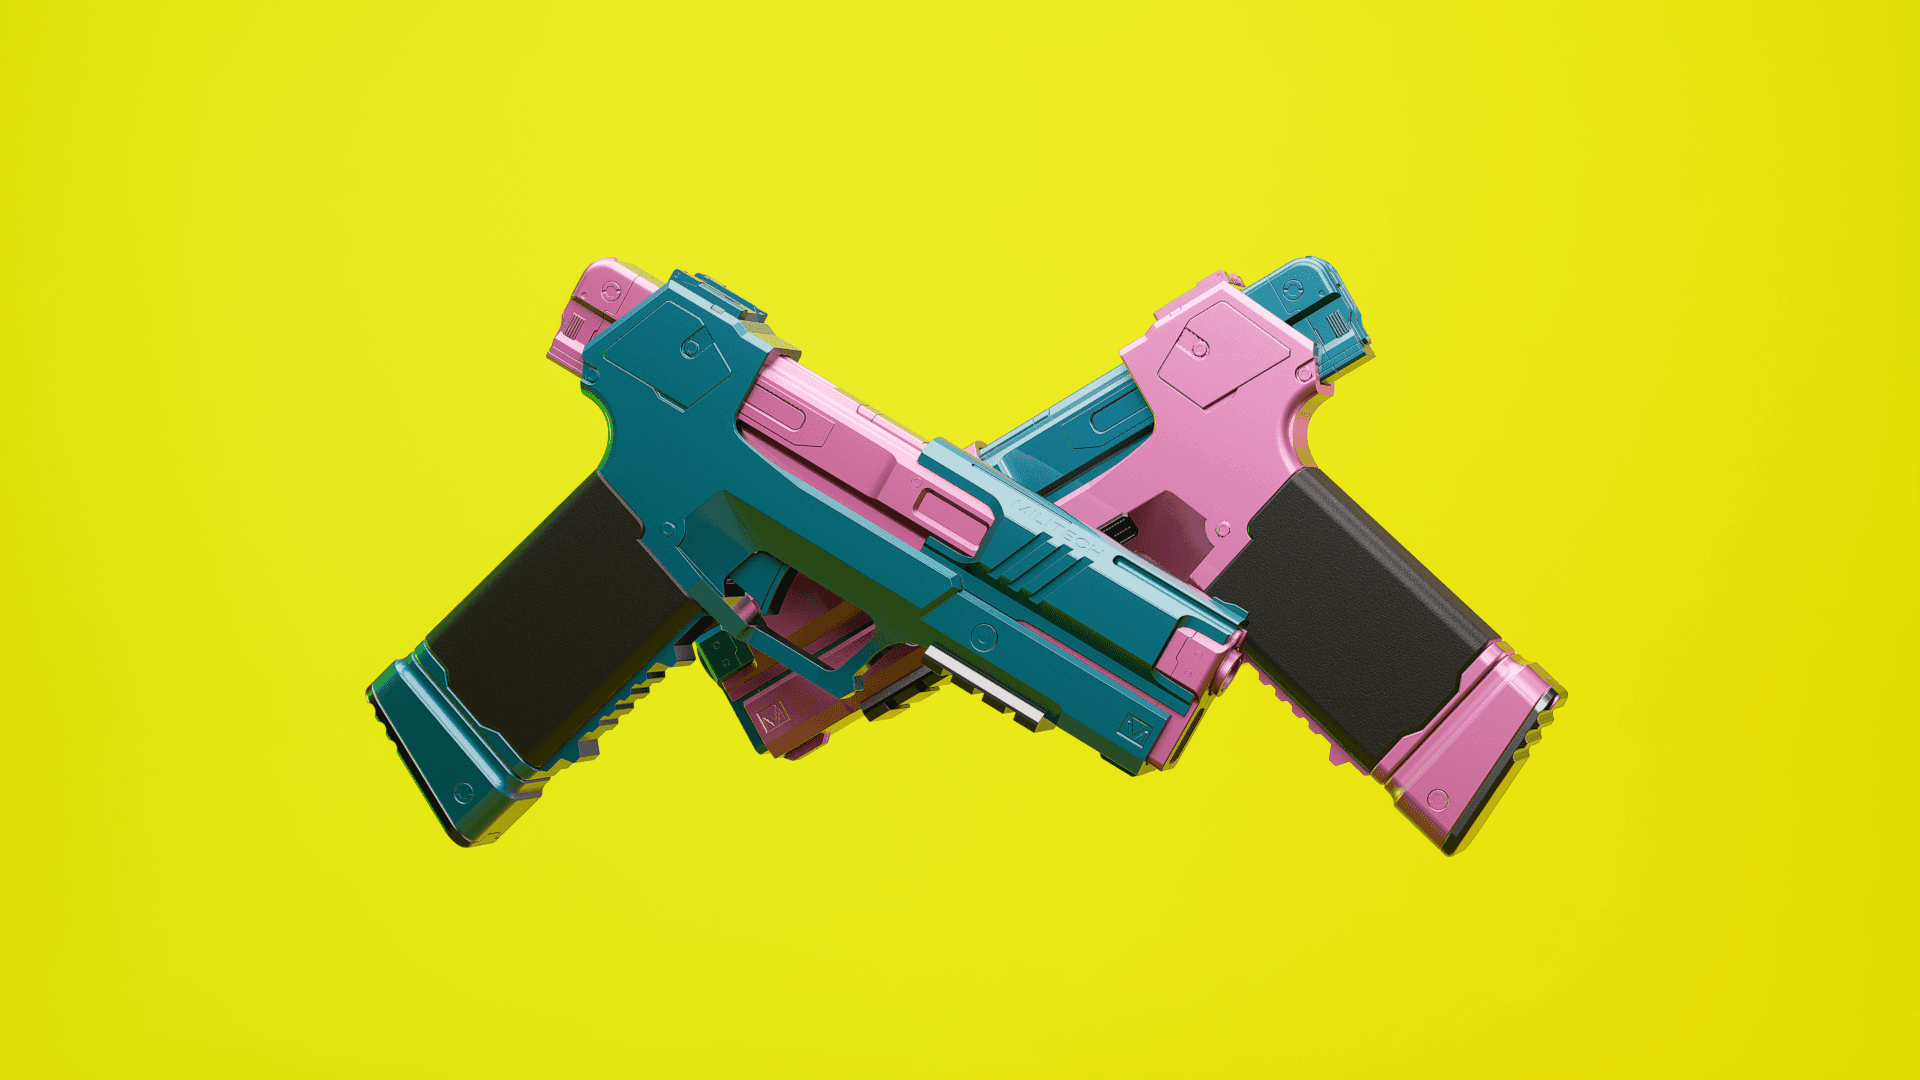 CYBERPUNK EDGERUNNERS REBECCA OMAHA MILITECH GUN 3D FILES 3d model